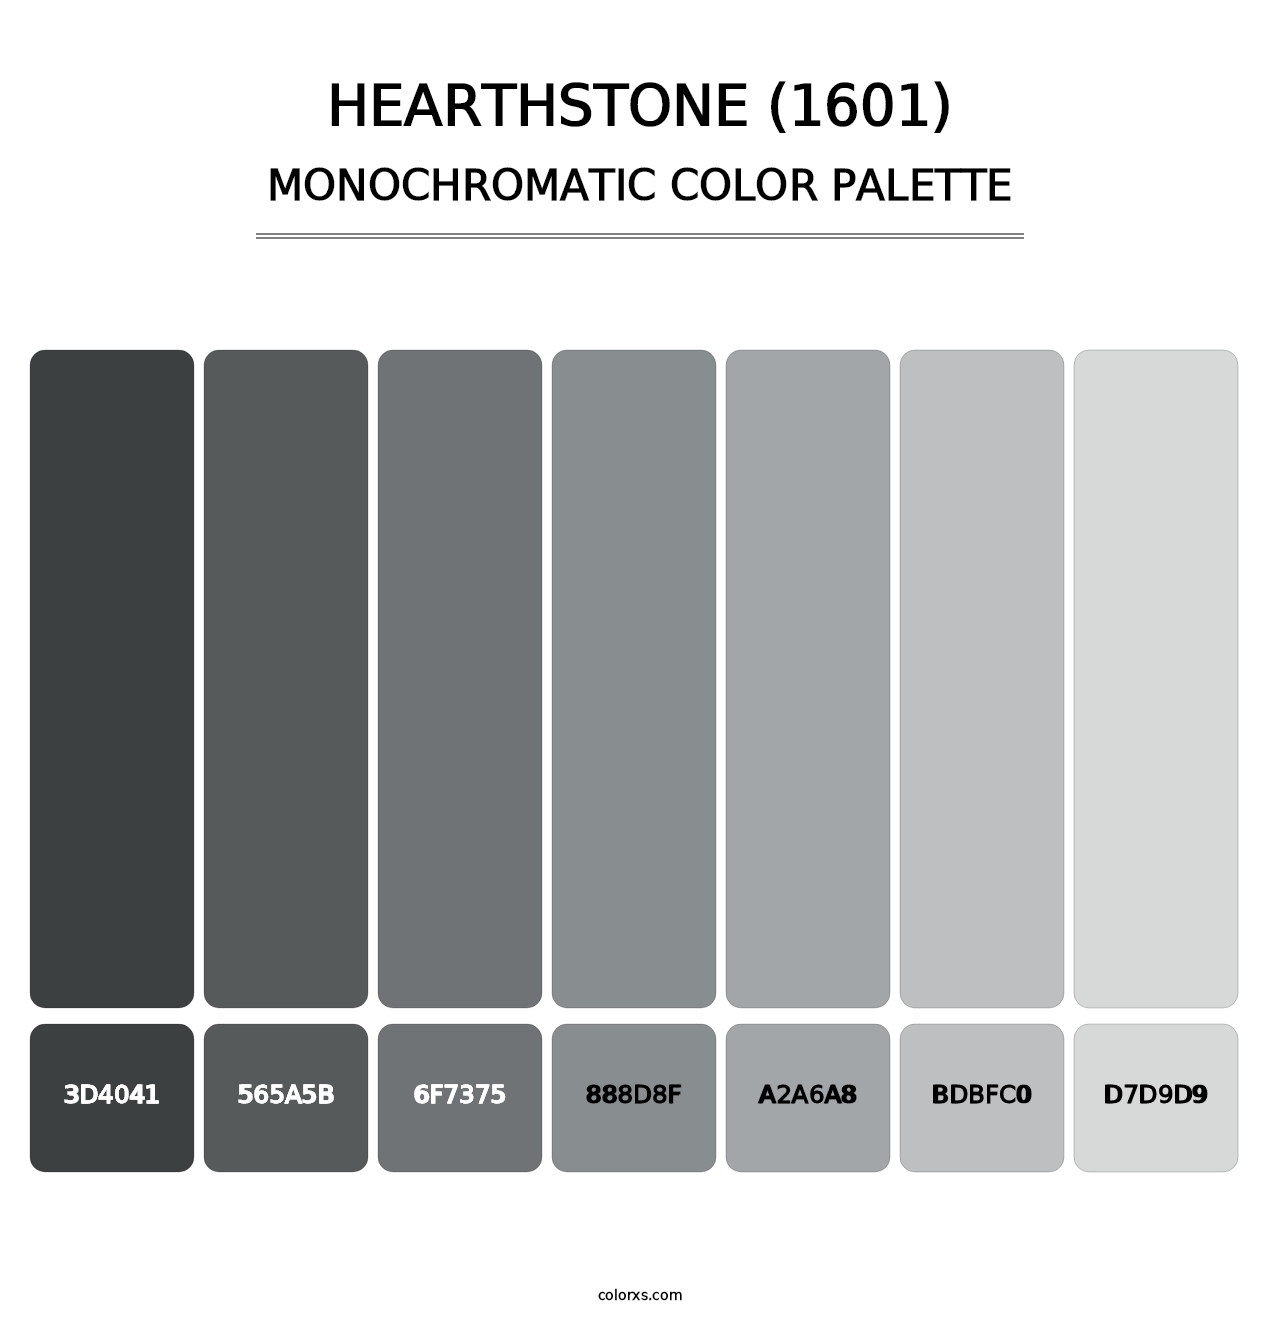 Hearthstone (1601) - Monochromatic Color Palette